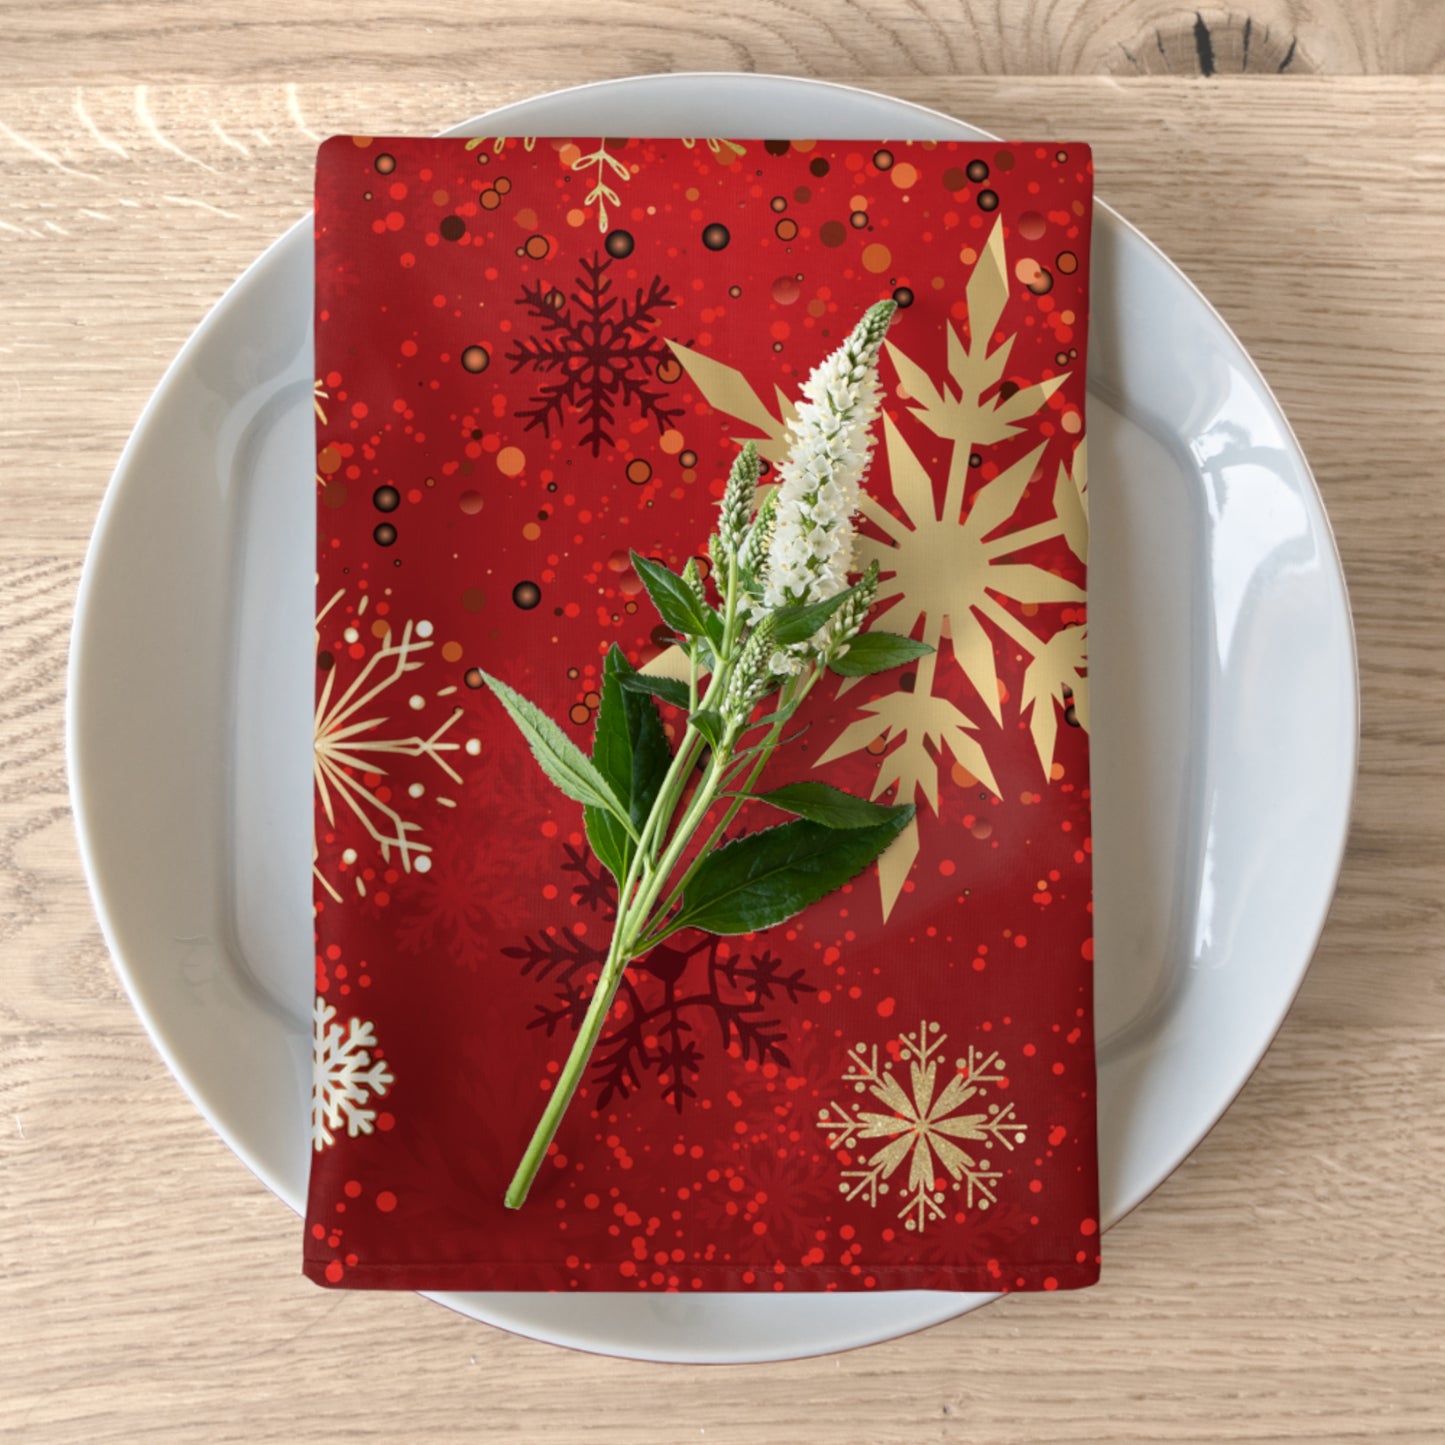 Red and Gold Snowflake Christmas Napkins / Set of 4 Cloth Napkins